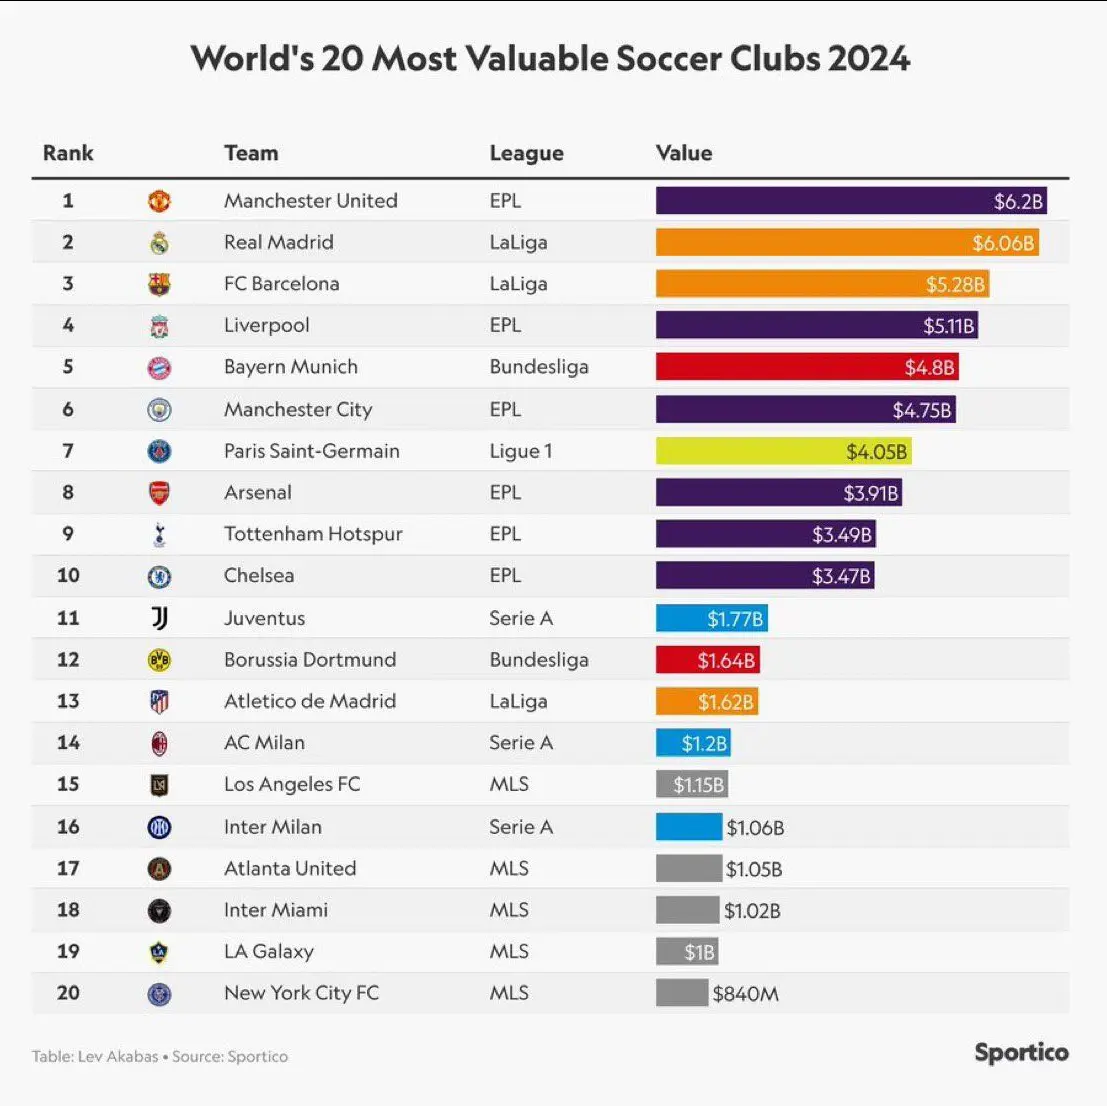 منچستر یونایتد بالاتر از رئال مادرید! / ارزشمندترین باشگاه های جهان 2024